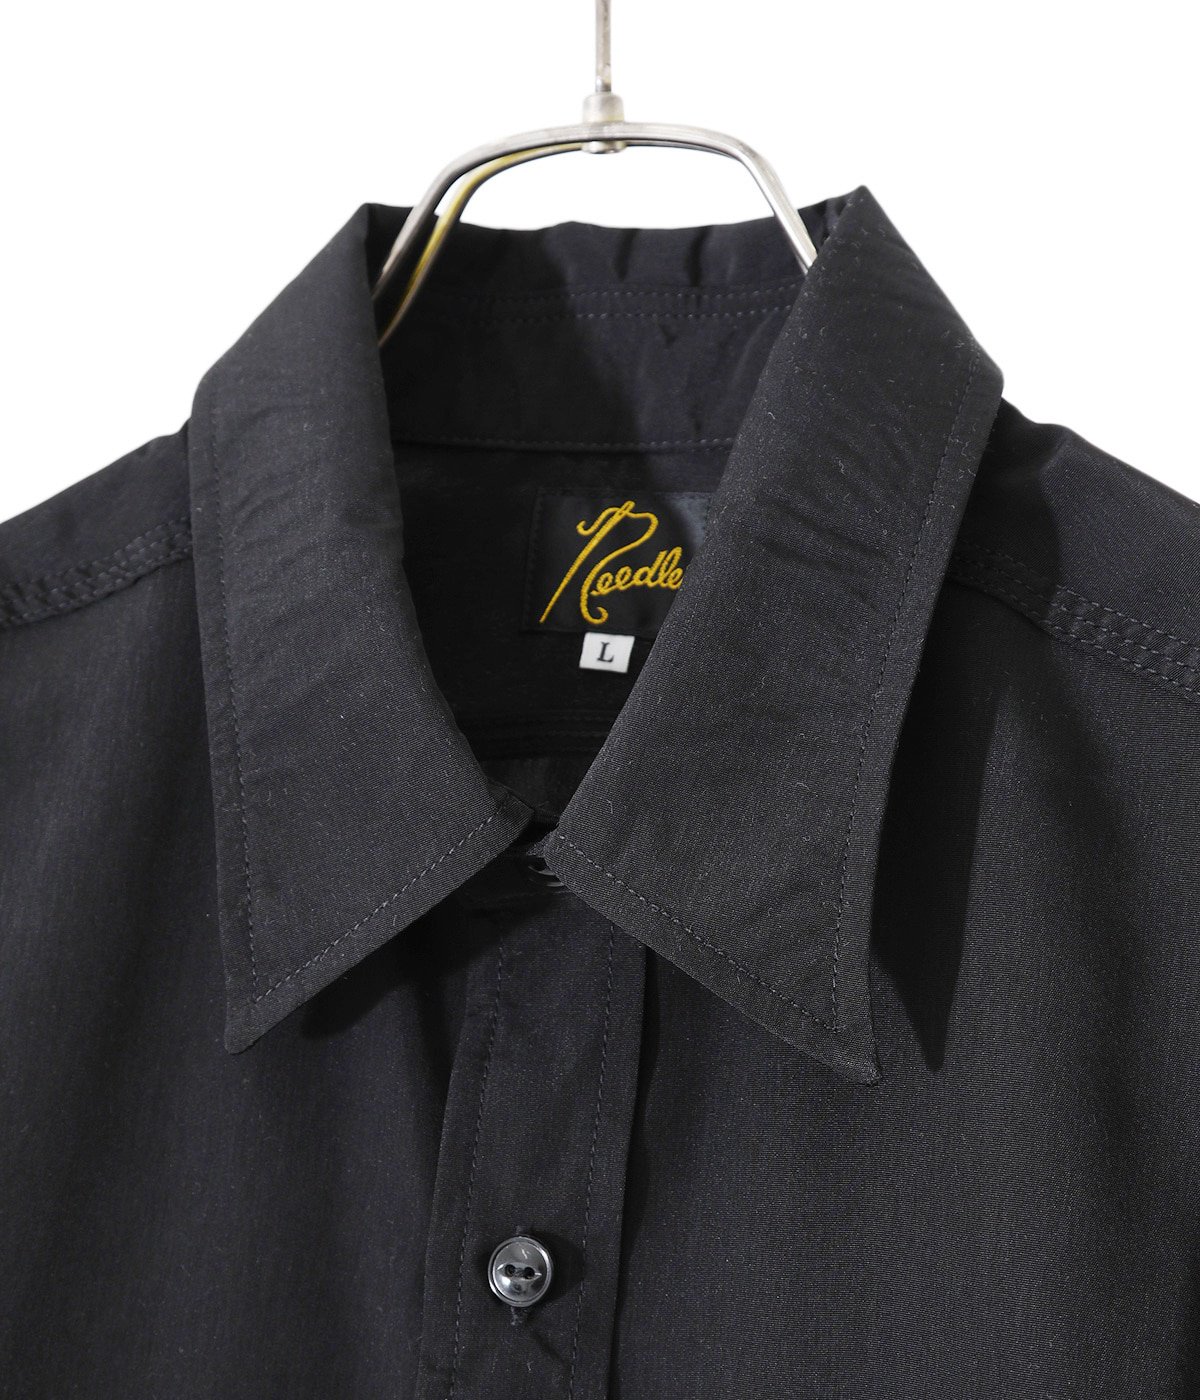 NEEDLES(ニードルズ) S/S Work Shirt - Poly Cloth / トップス 半袖 